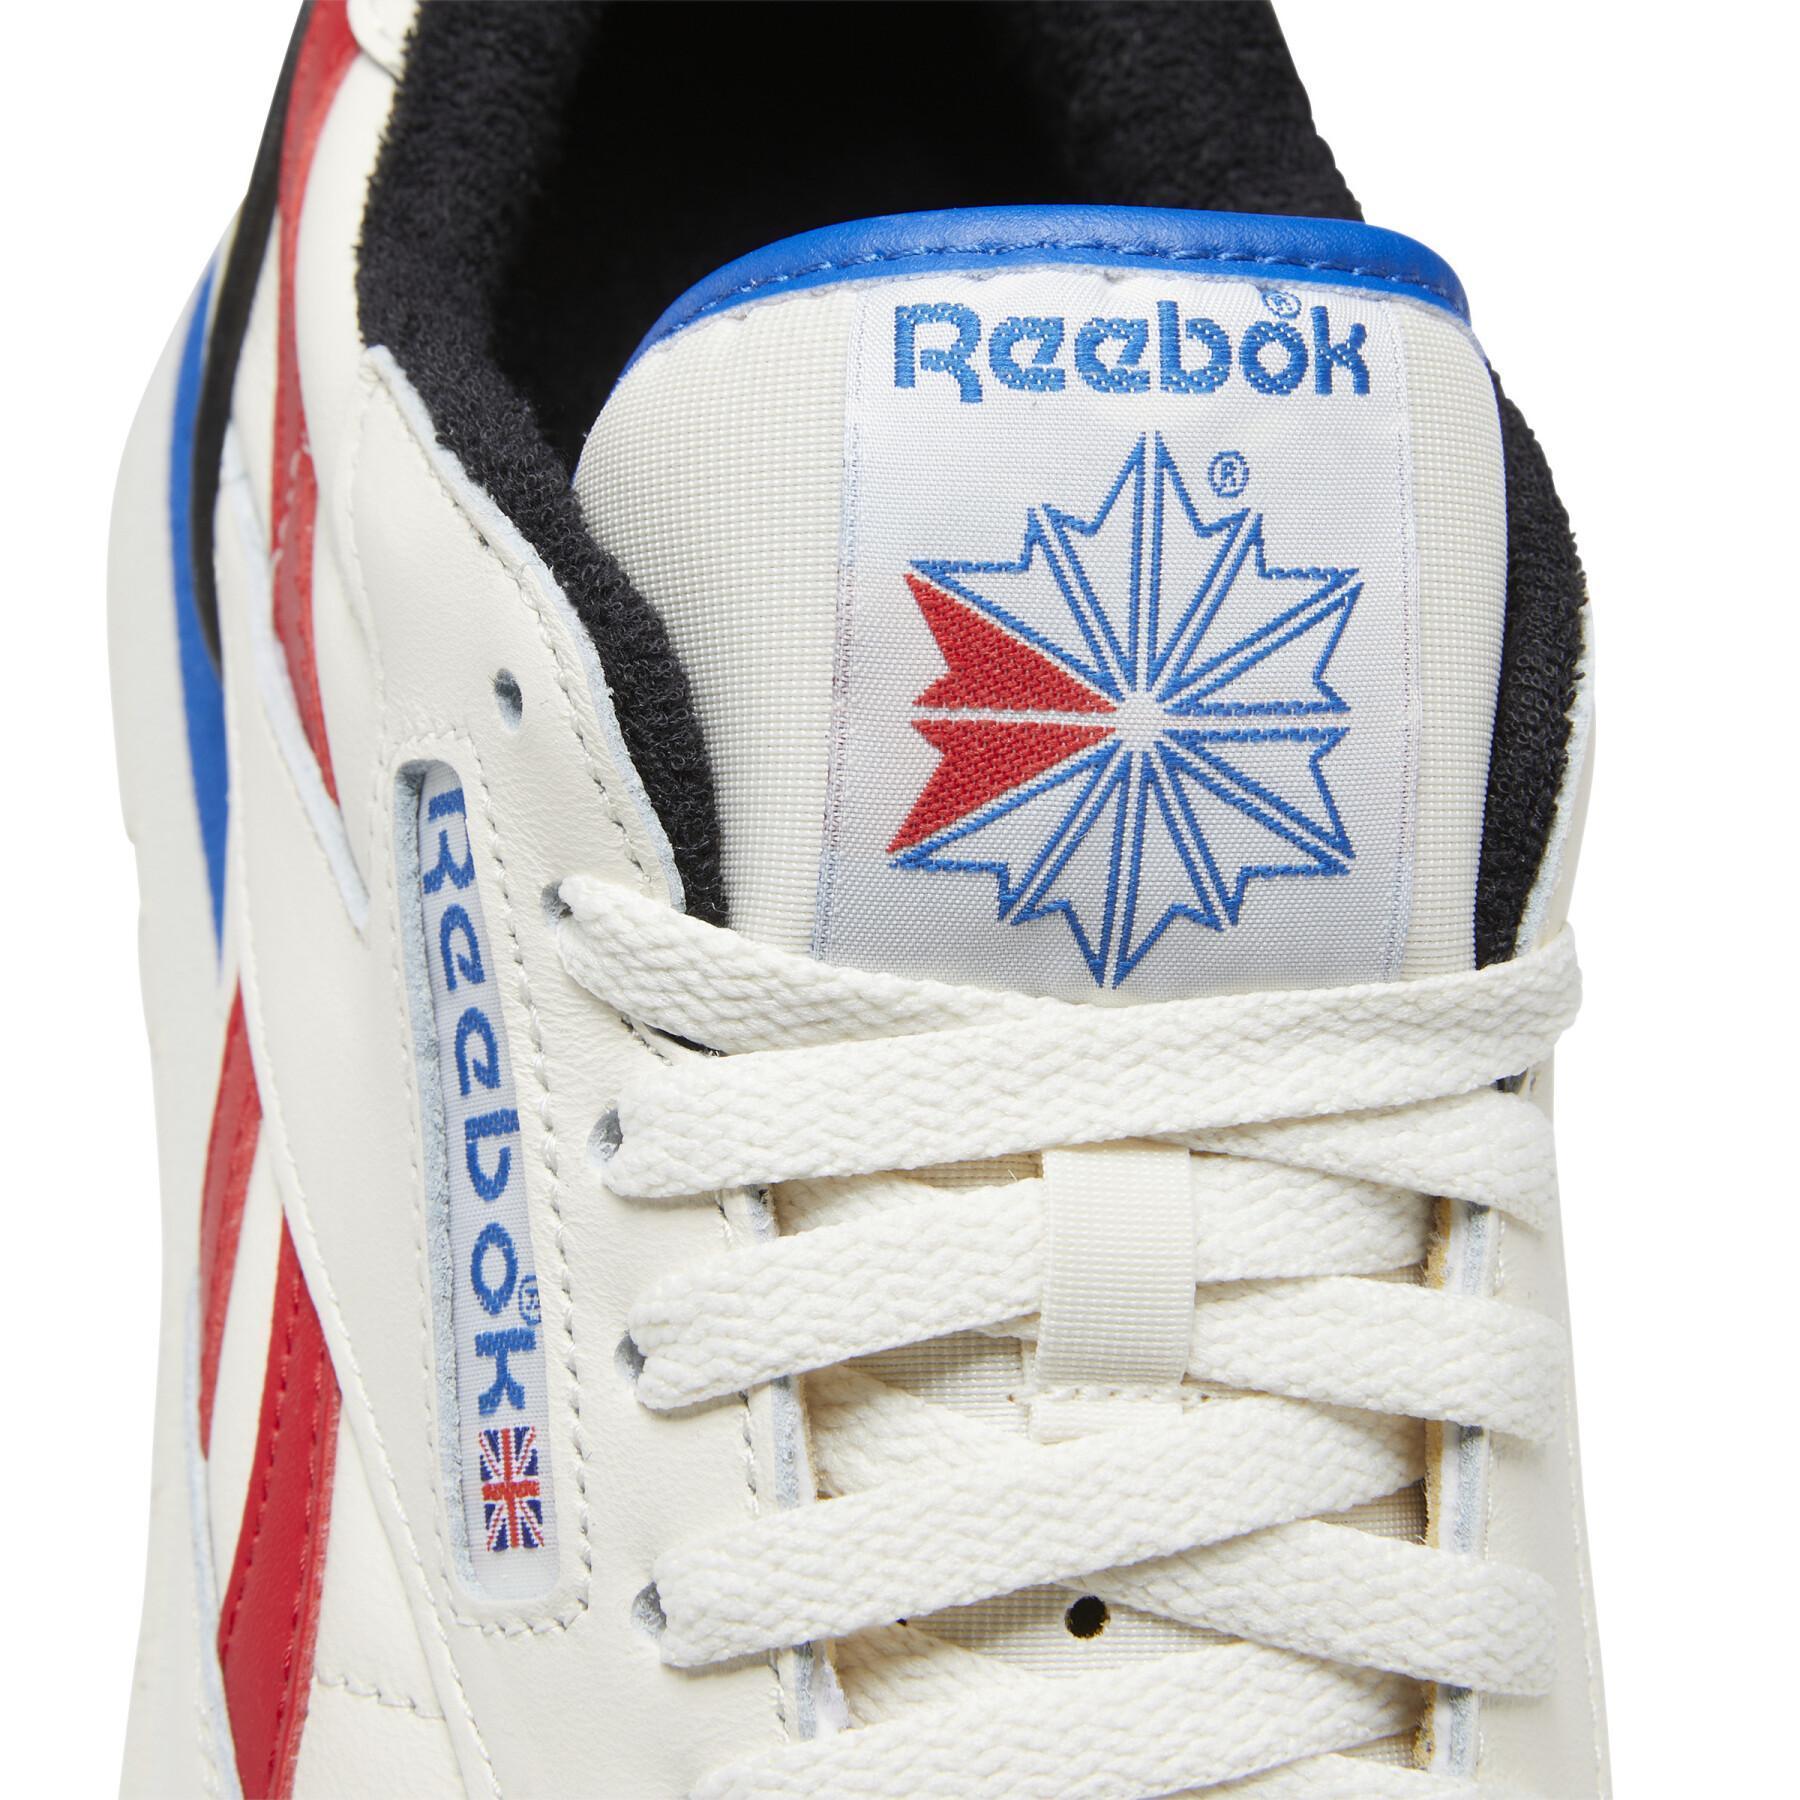 Sneakers Reebok Classic 1983 Vintage